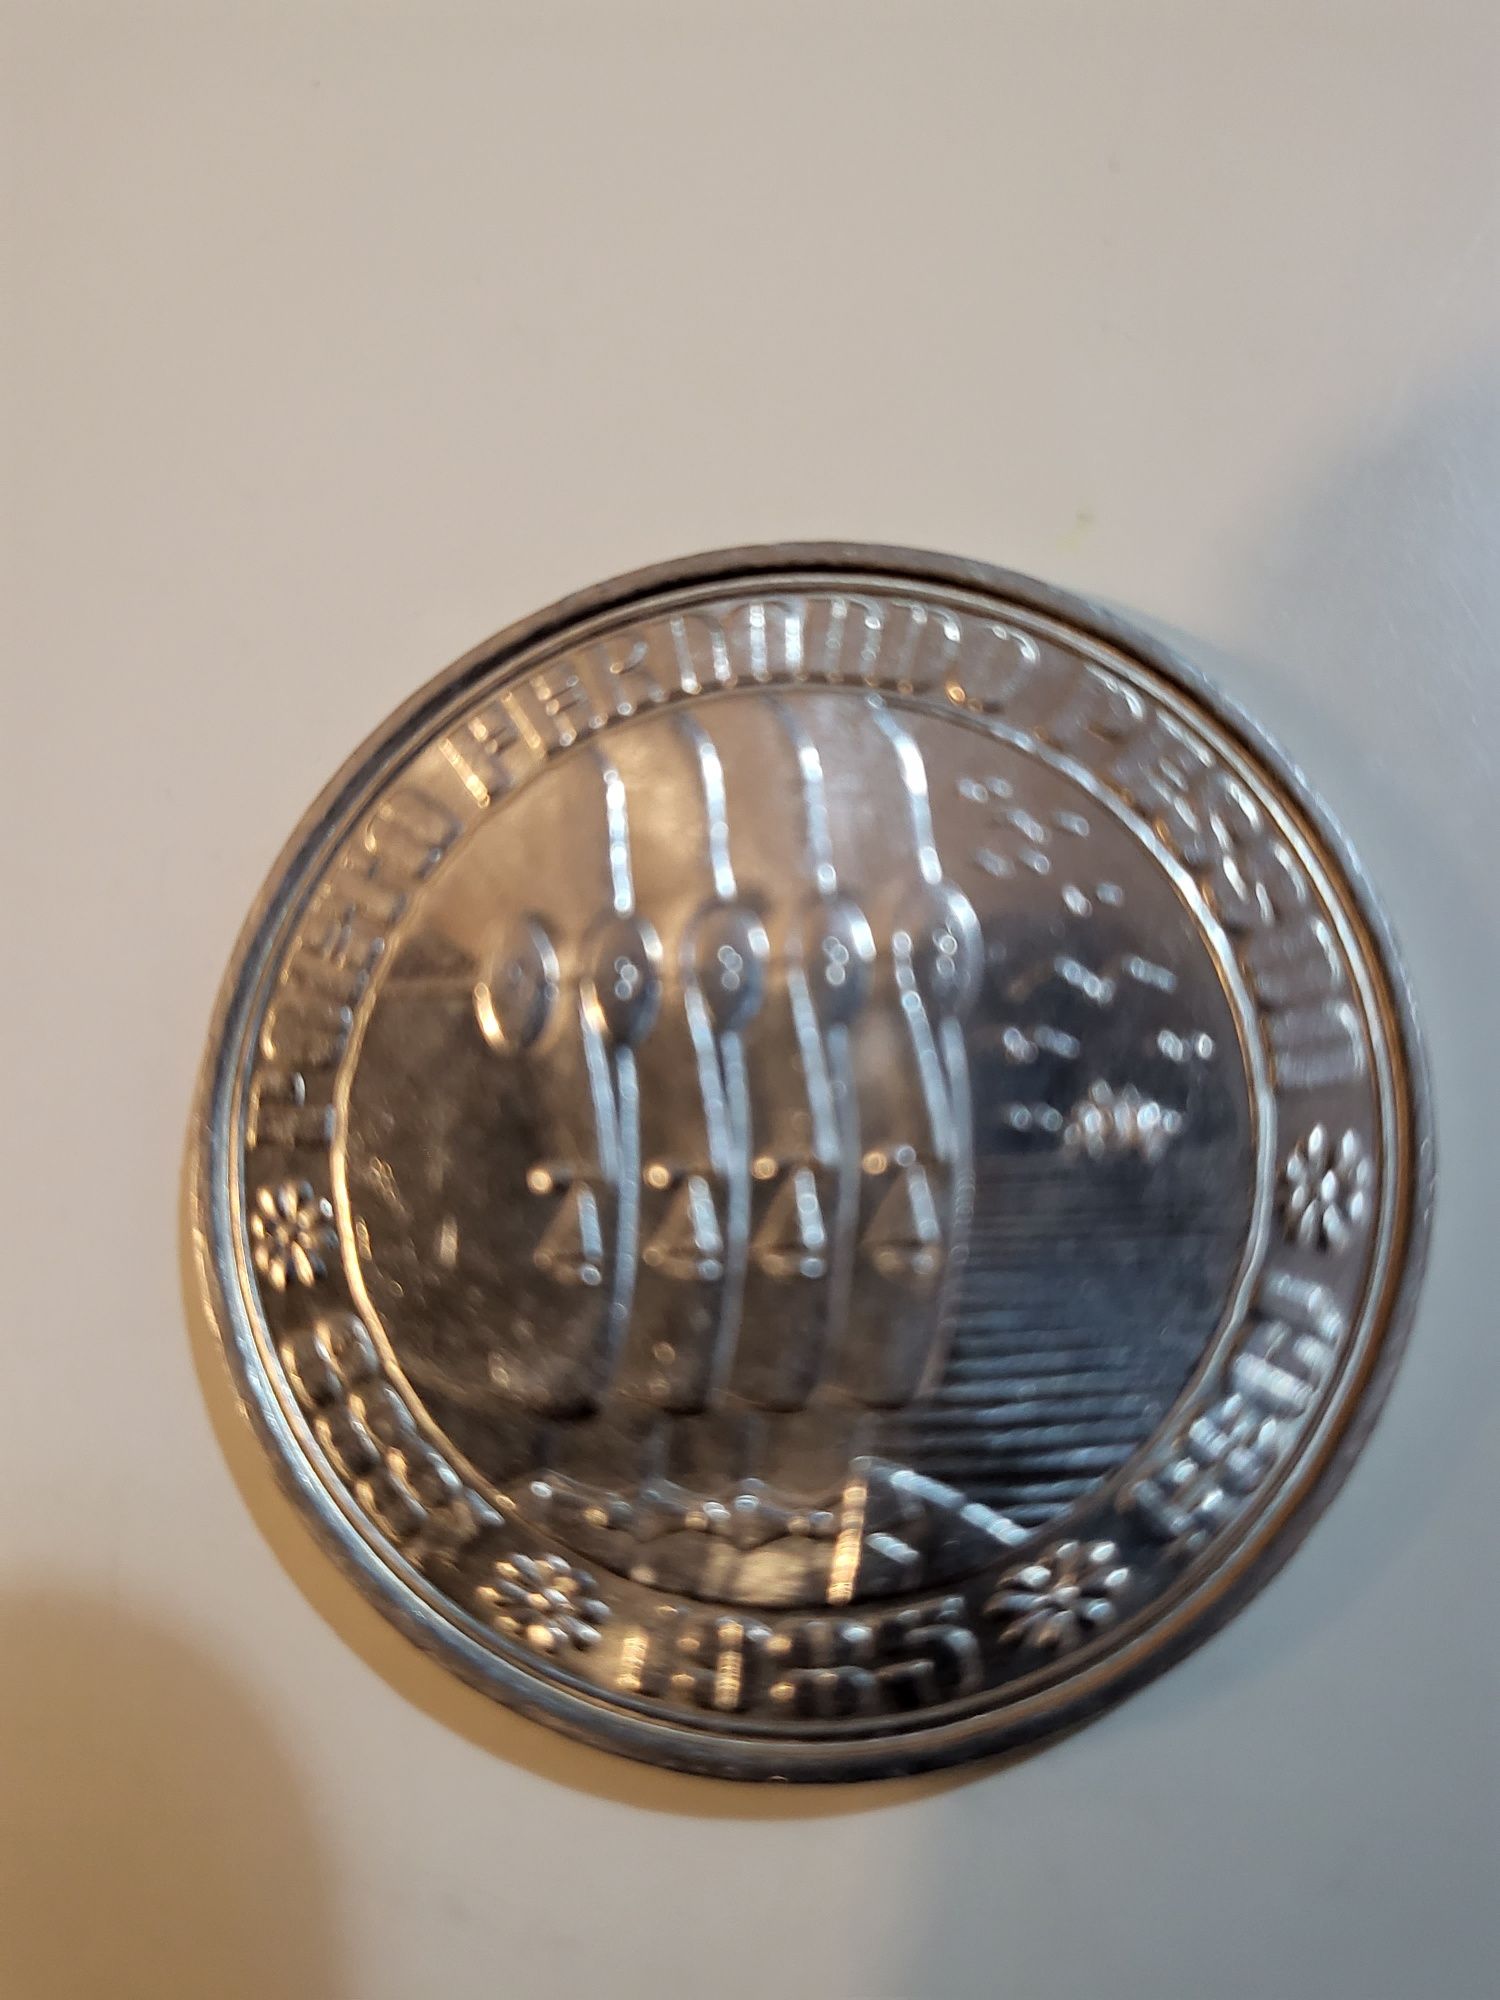 Moeda 100$00 escudos, República Portuguesa, comemorativa